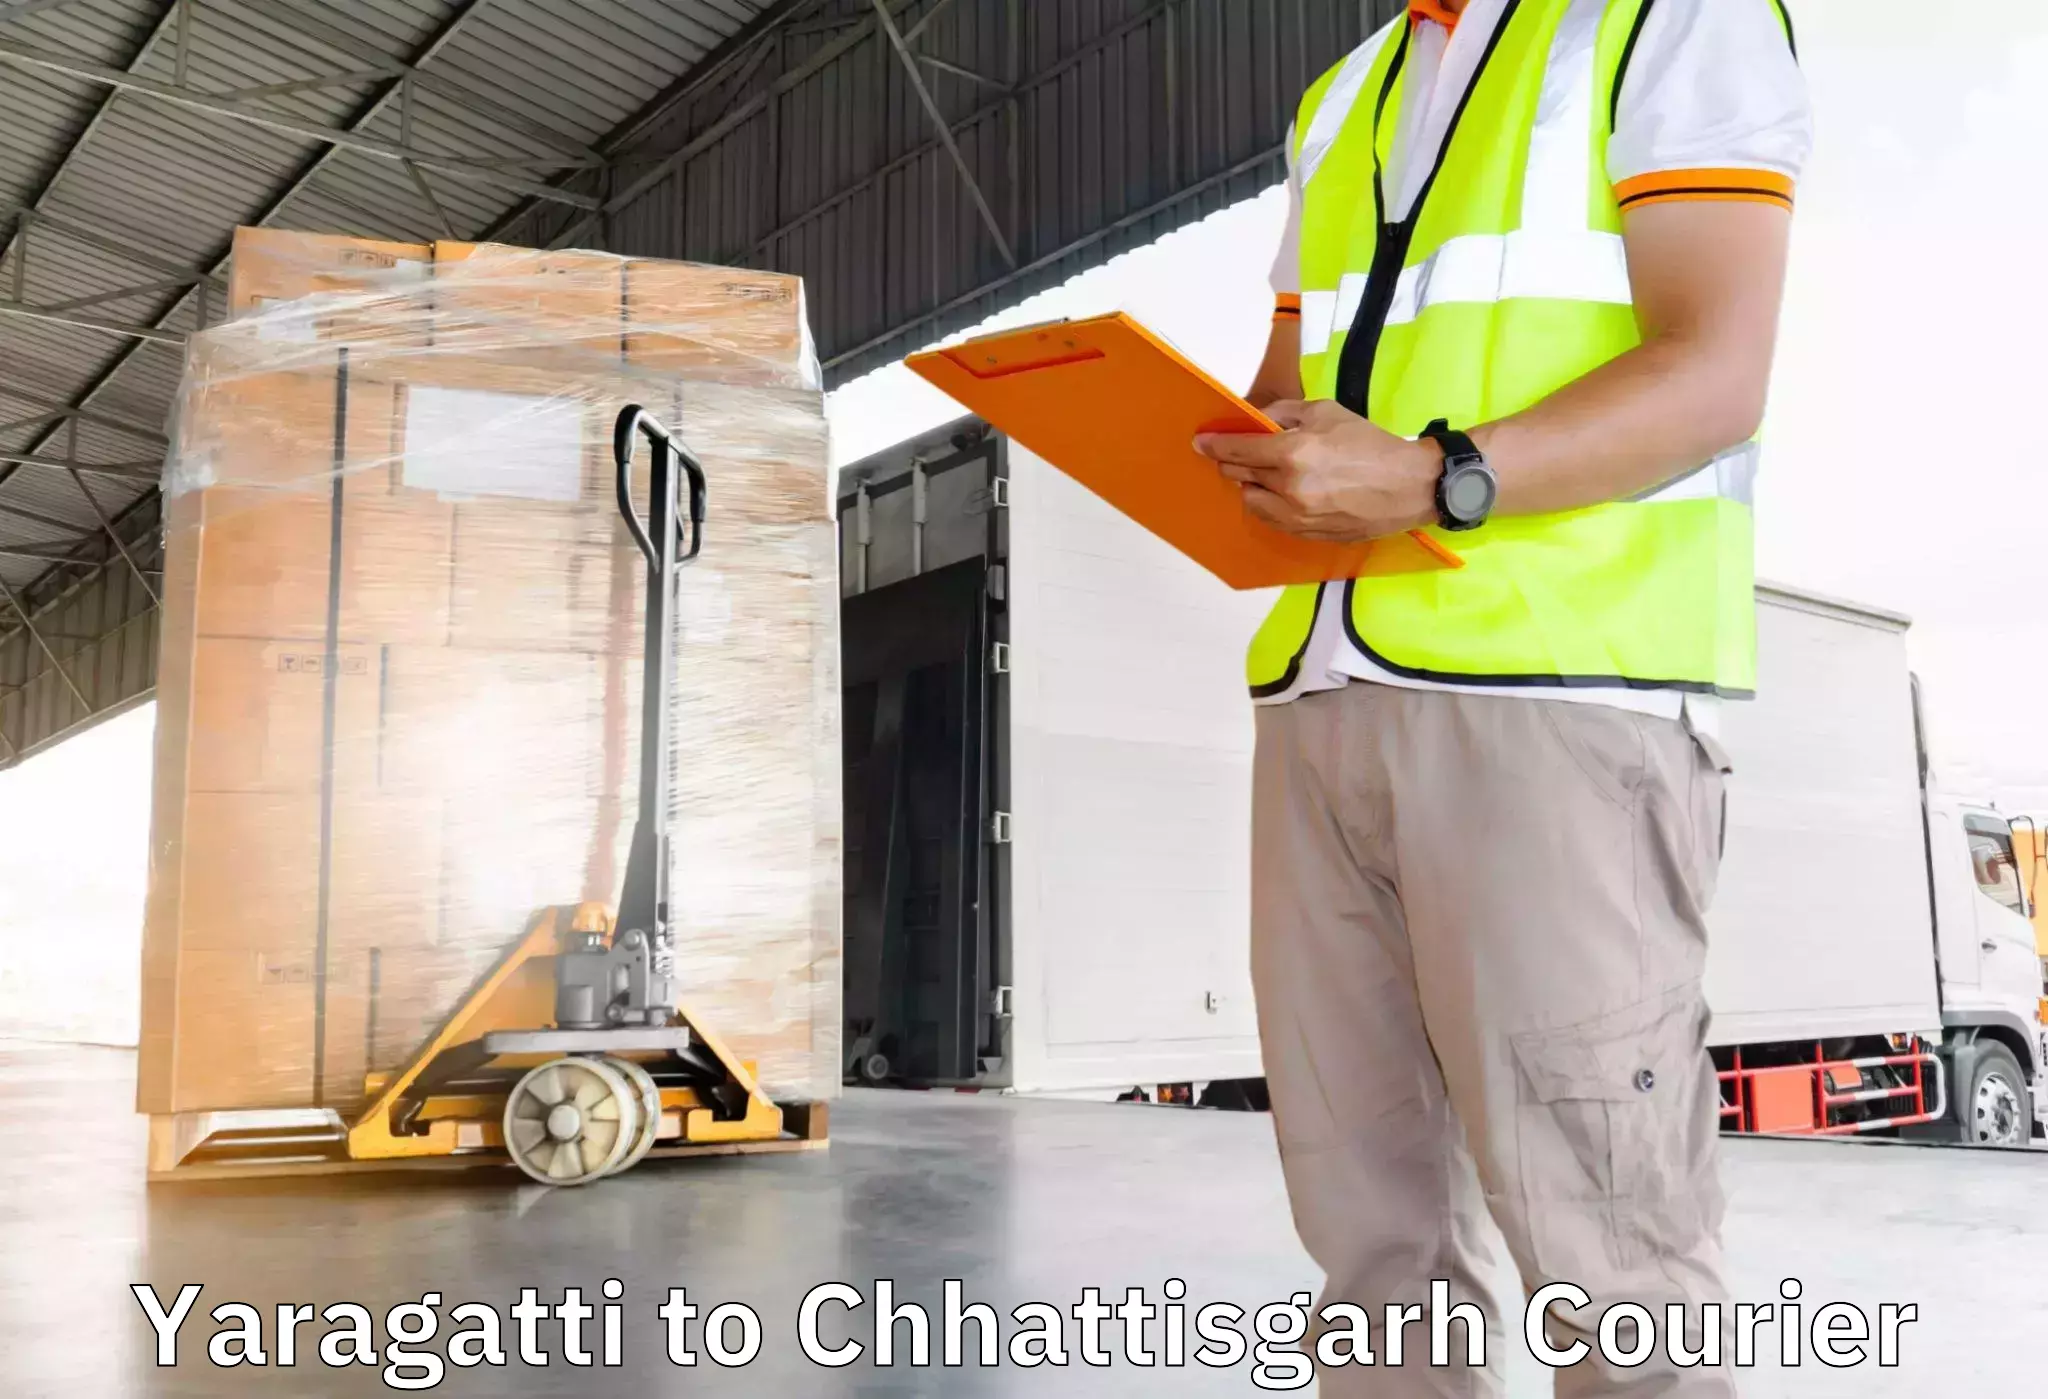 Furniture moving experts Yaragatti to Pathalgaon